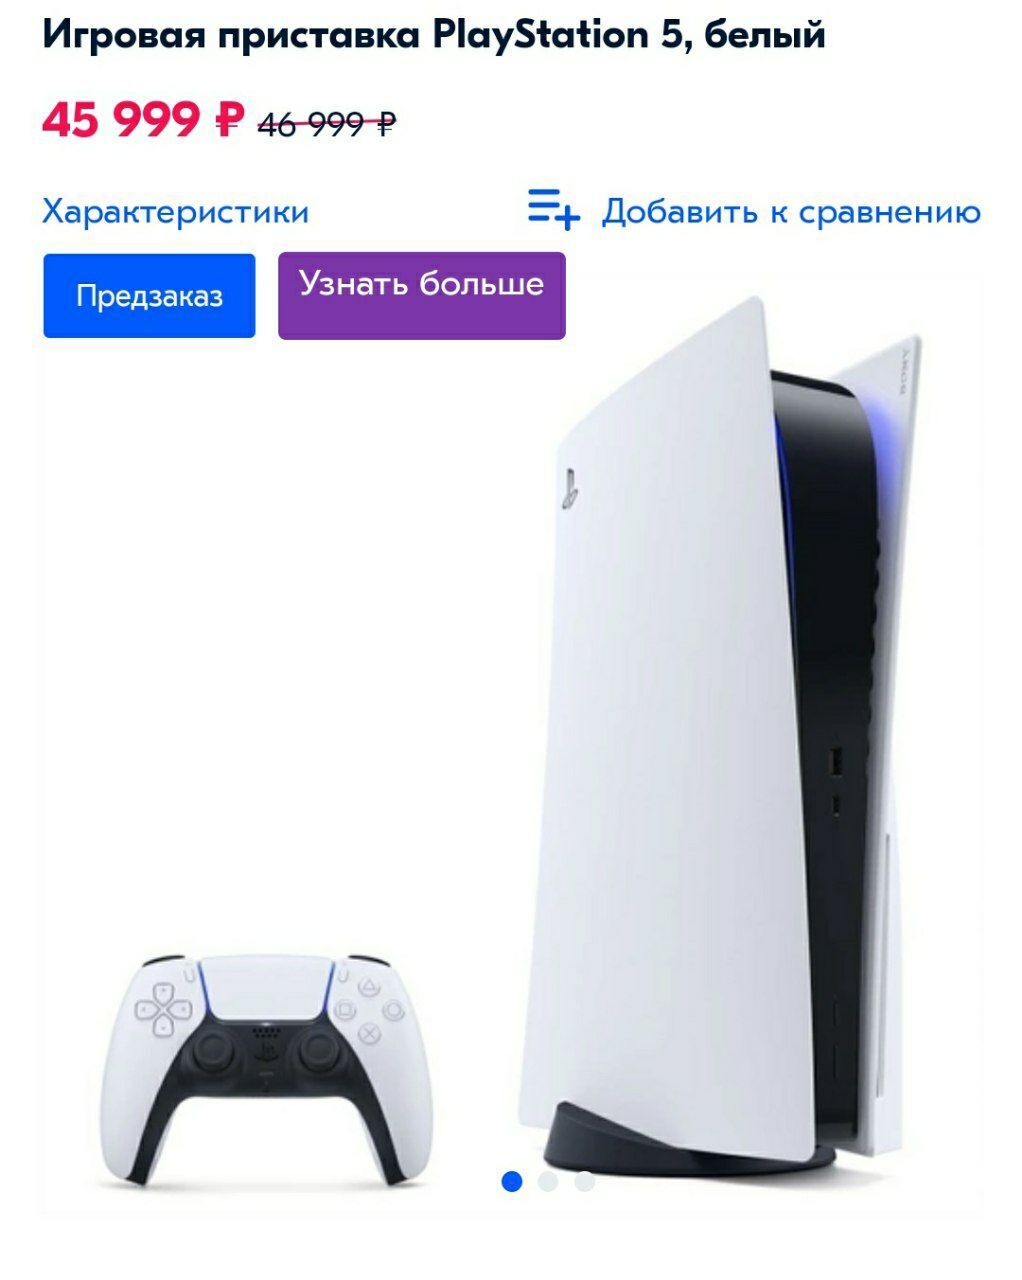 PlayStation 5 продают со скидкой по предзаказу в России